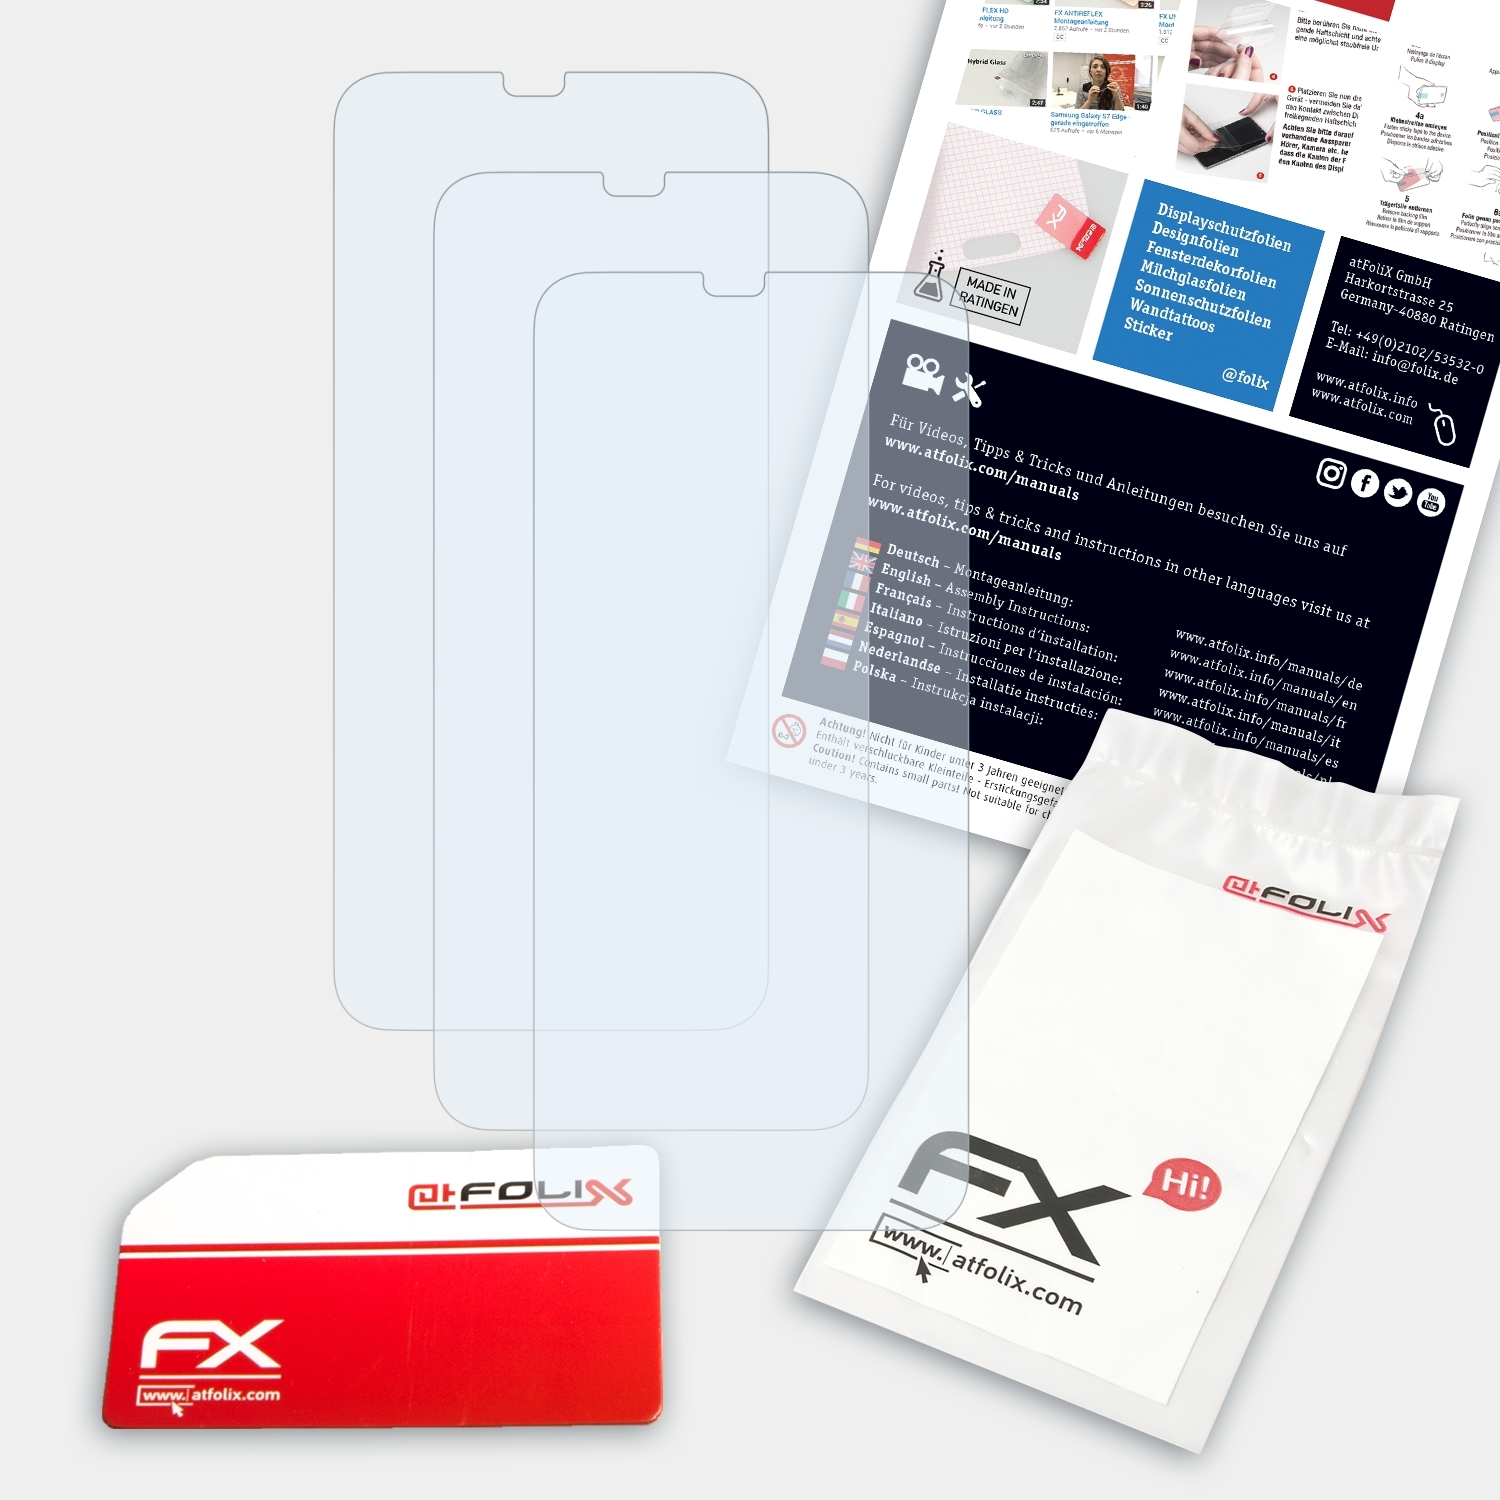 ATFOLIX 3x FX-Clear Nokia Displayschutz(für X6 (2018))